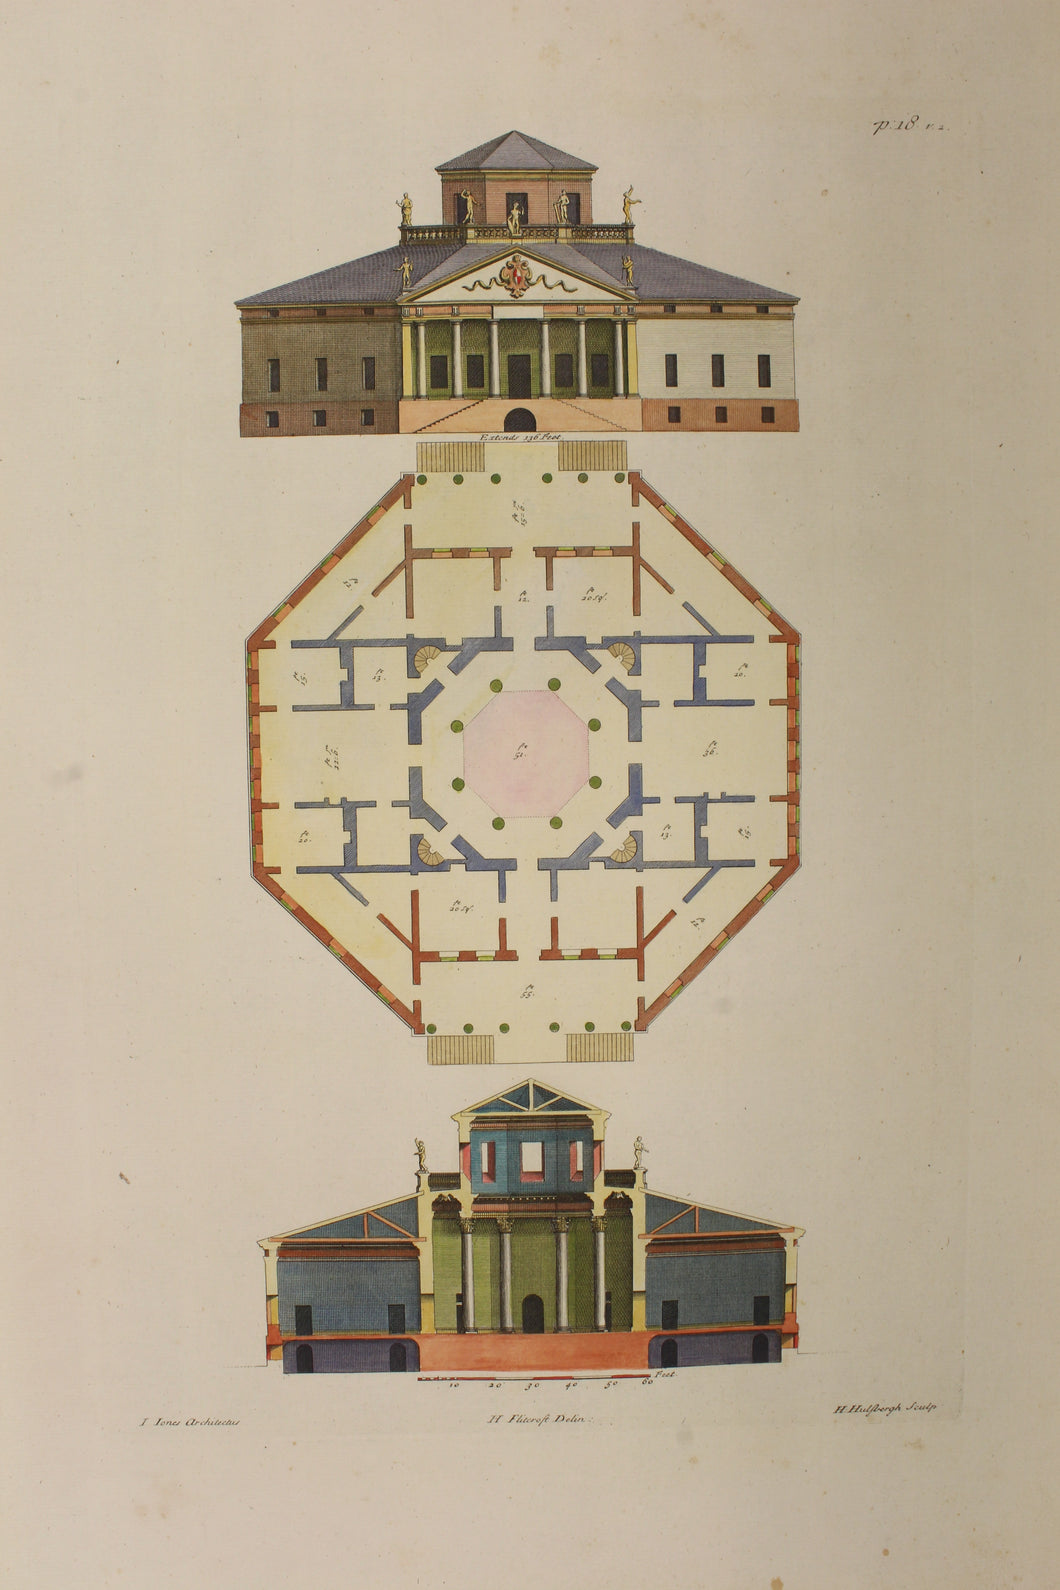 Architecture, Jones, Inigo, Plate 18, c1715-1767